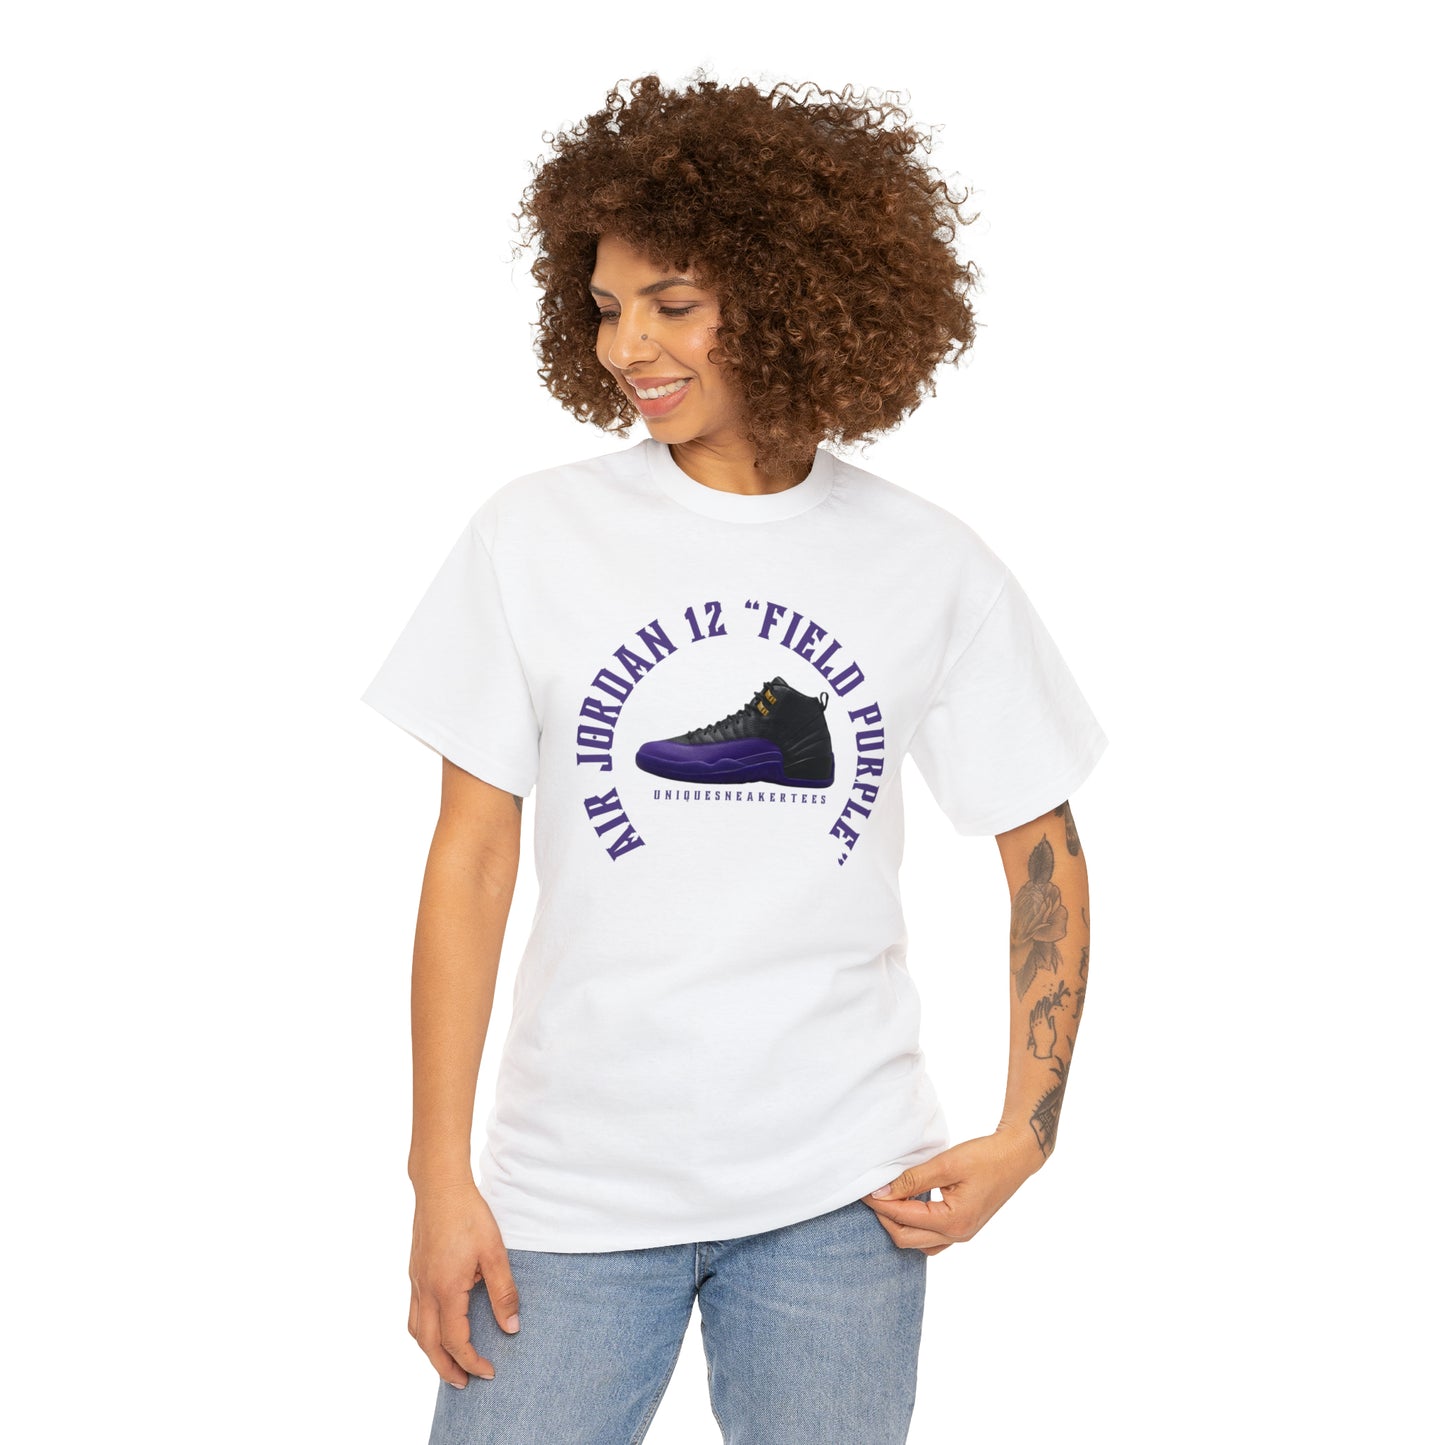 Air Jordan 12 “Field Purple” Tee